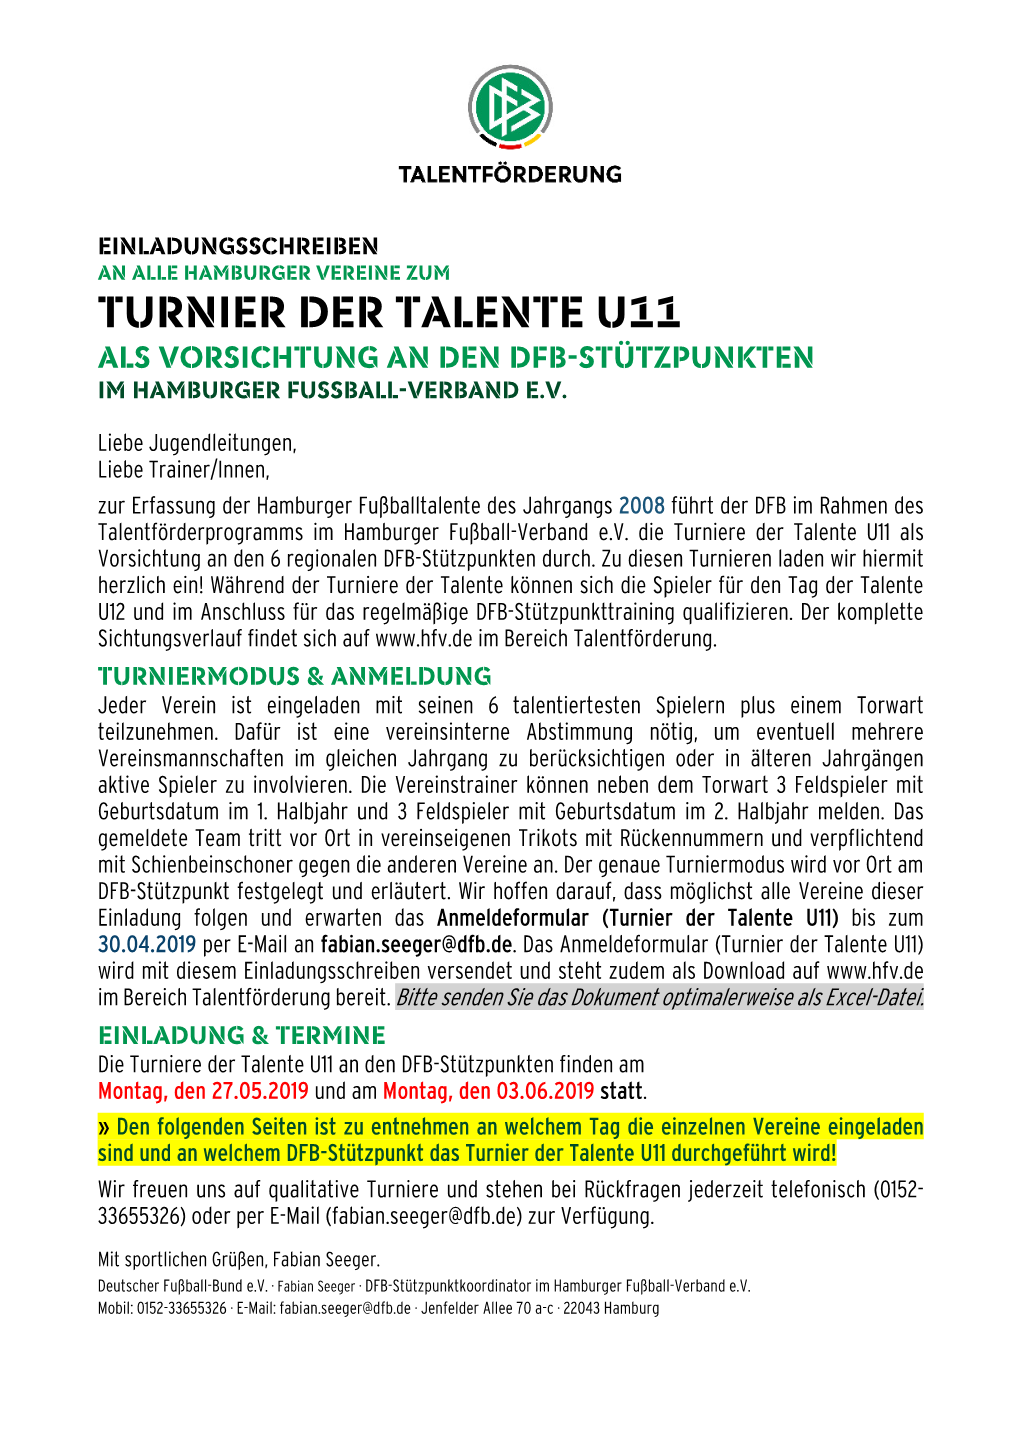 11 ALS Vorsichtung an Den DFB-Stützpunkten Im Hamburger Fußball-Verband E.V